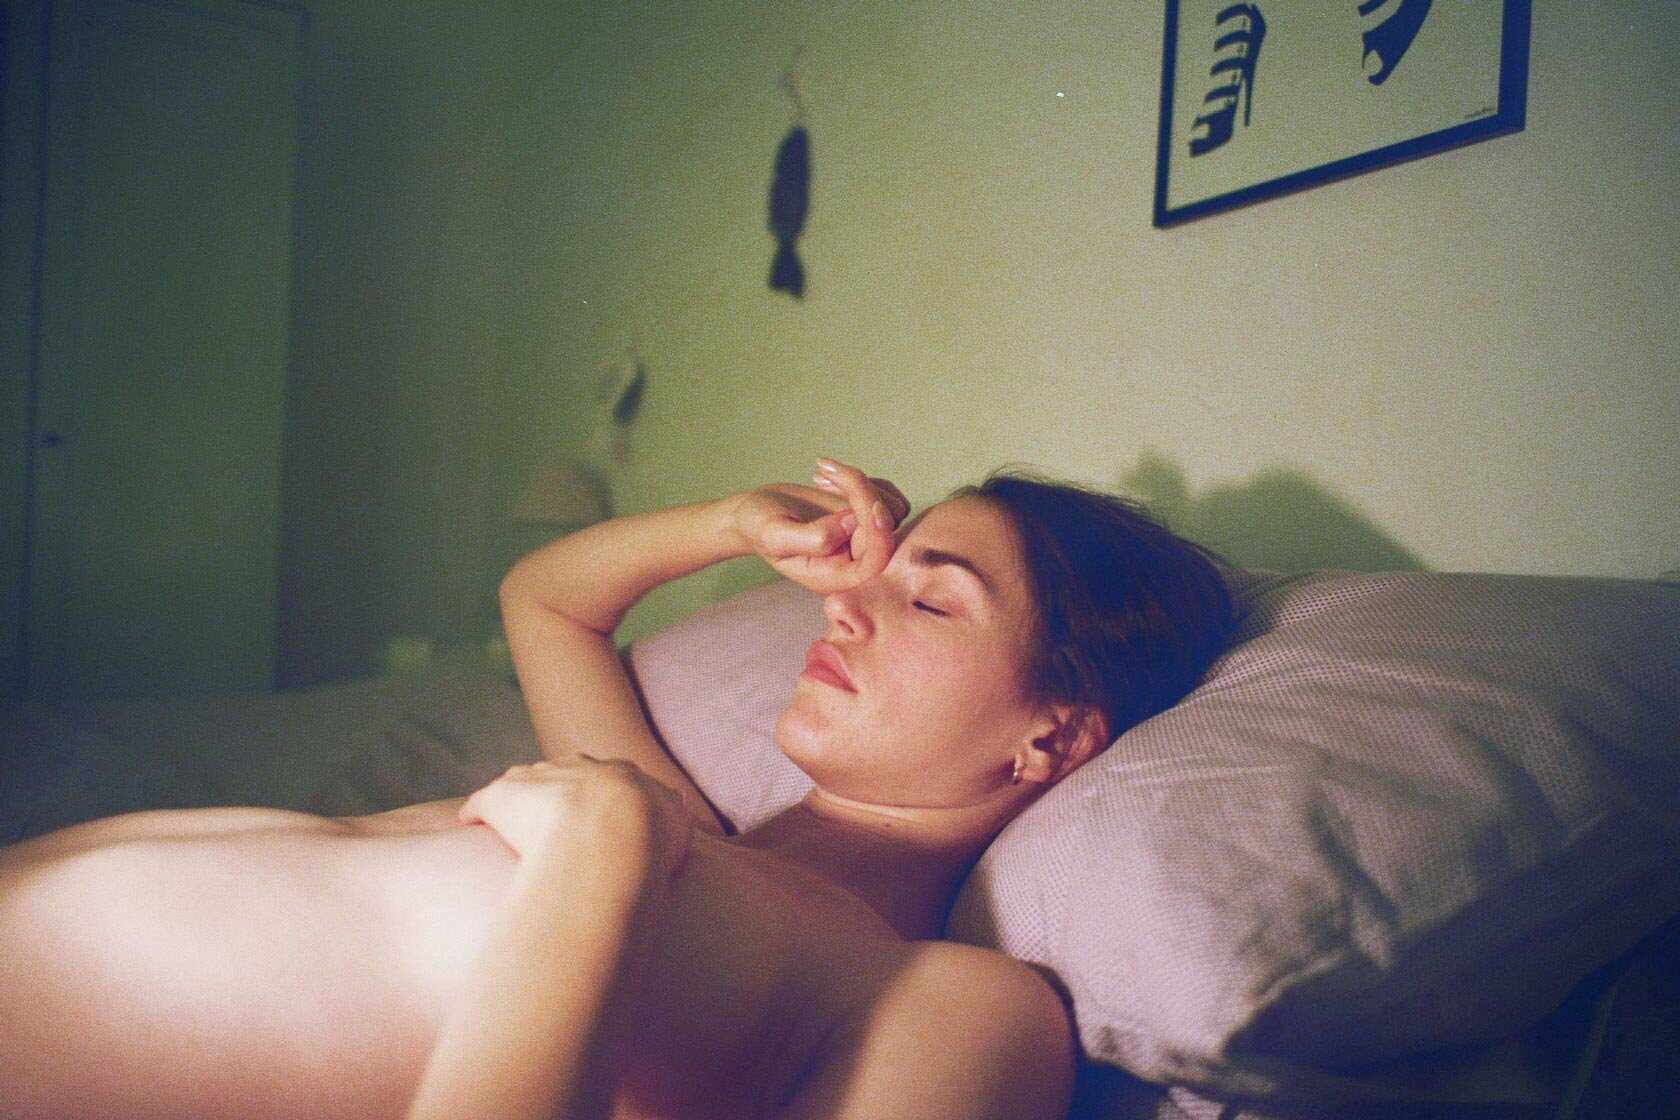 Η μουνάρα Julia Danko σε γυμνές φωτογραφίες στο σπίτι της